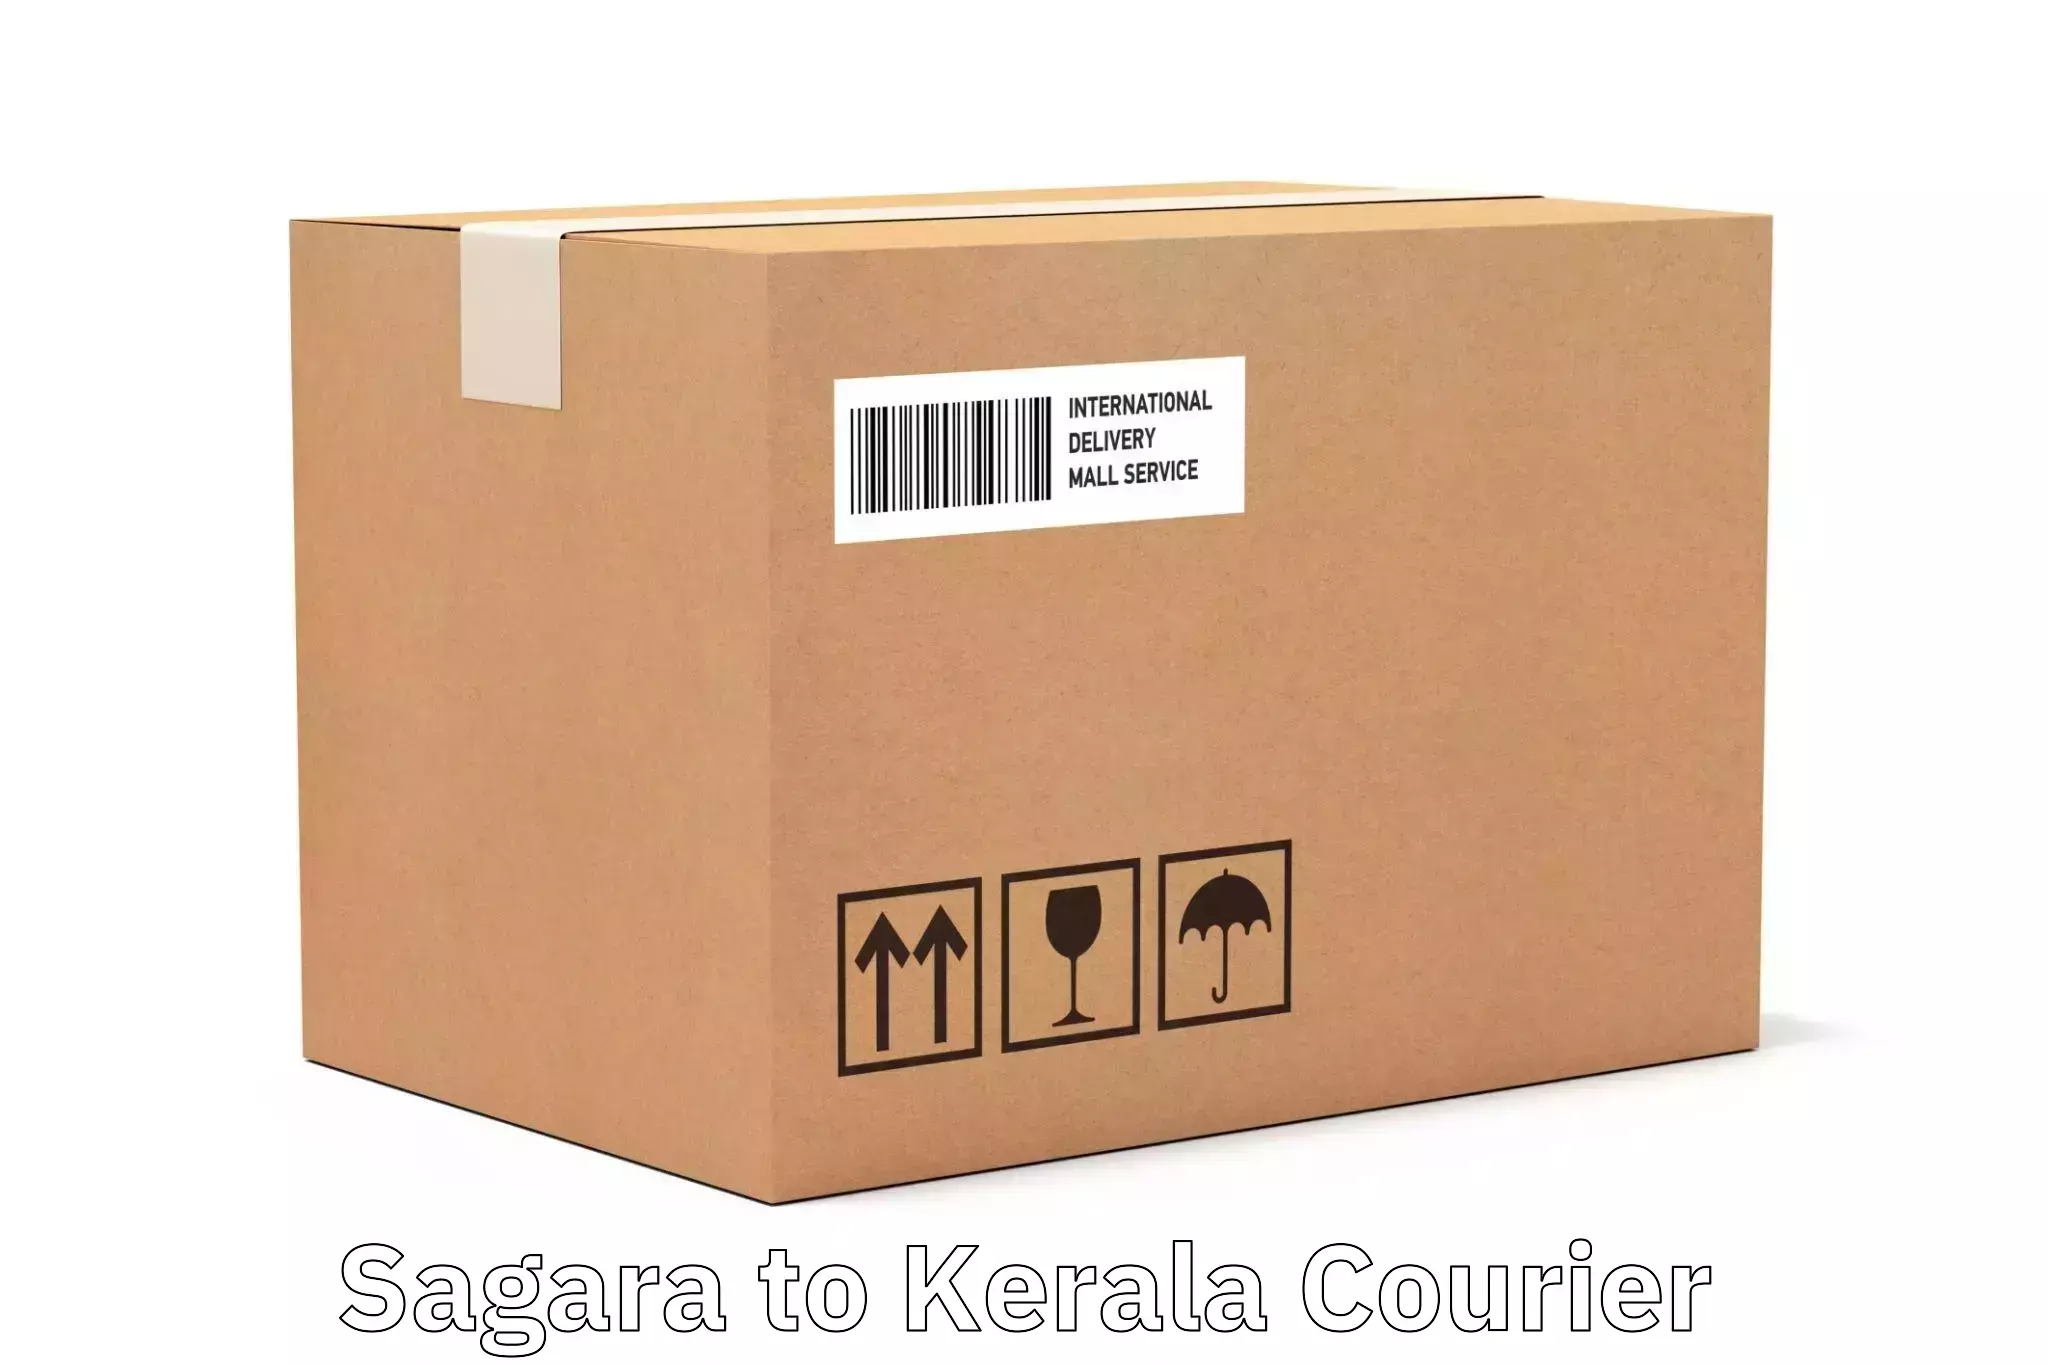 Efficient freight service Sagara to Kerala